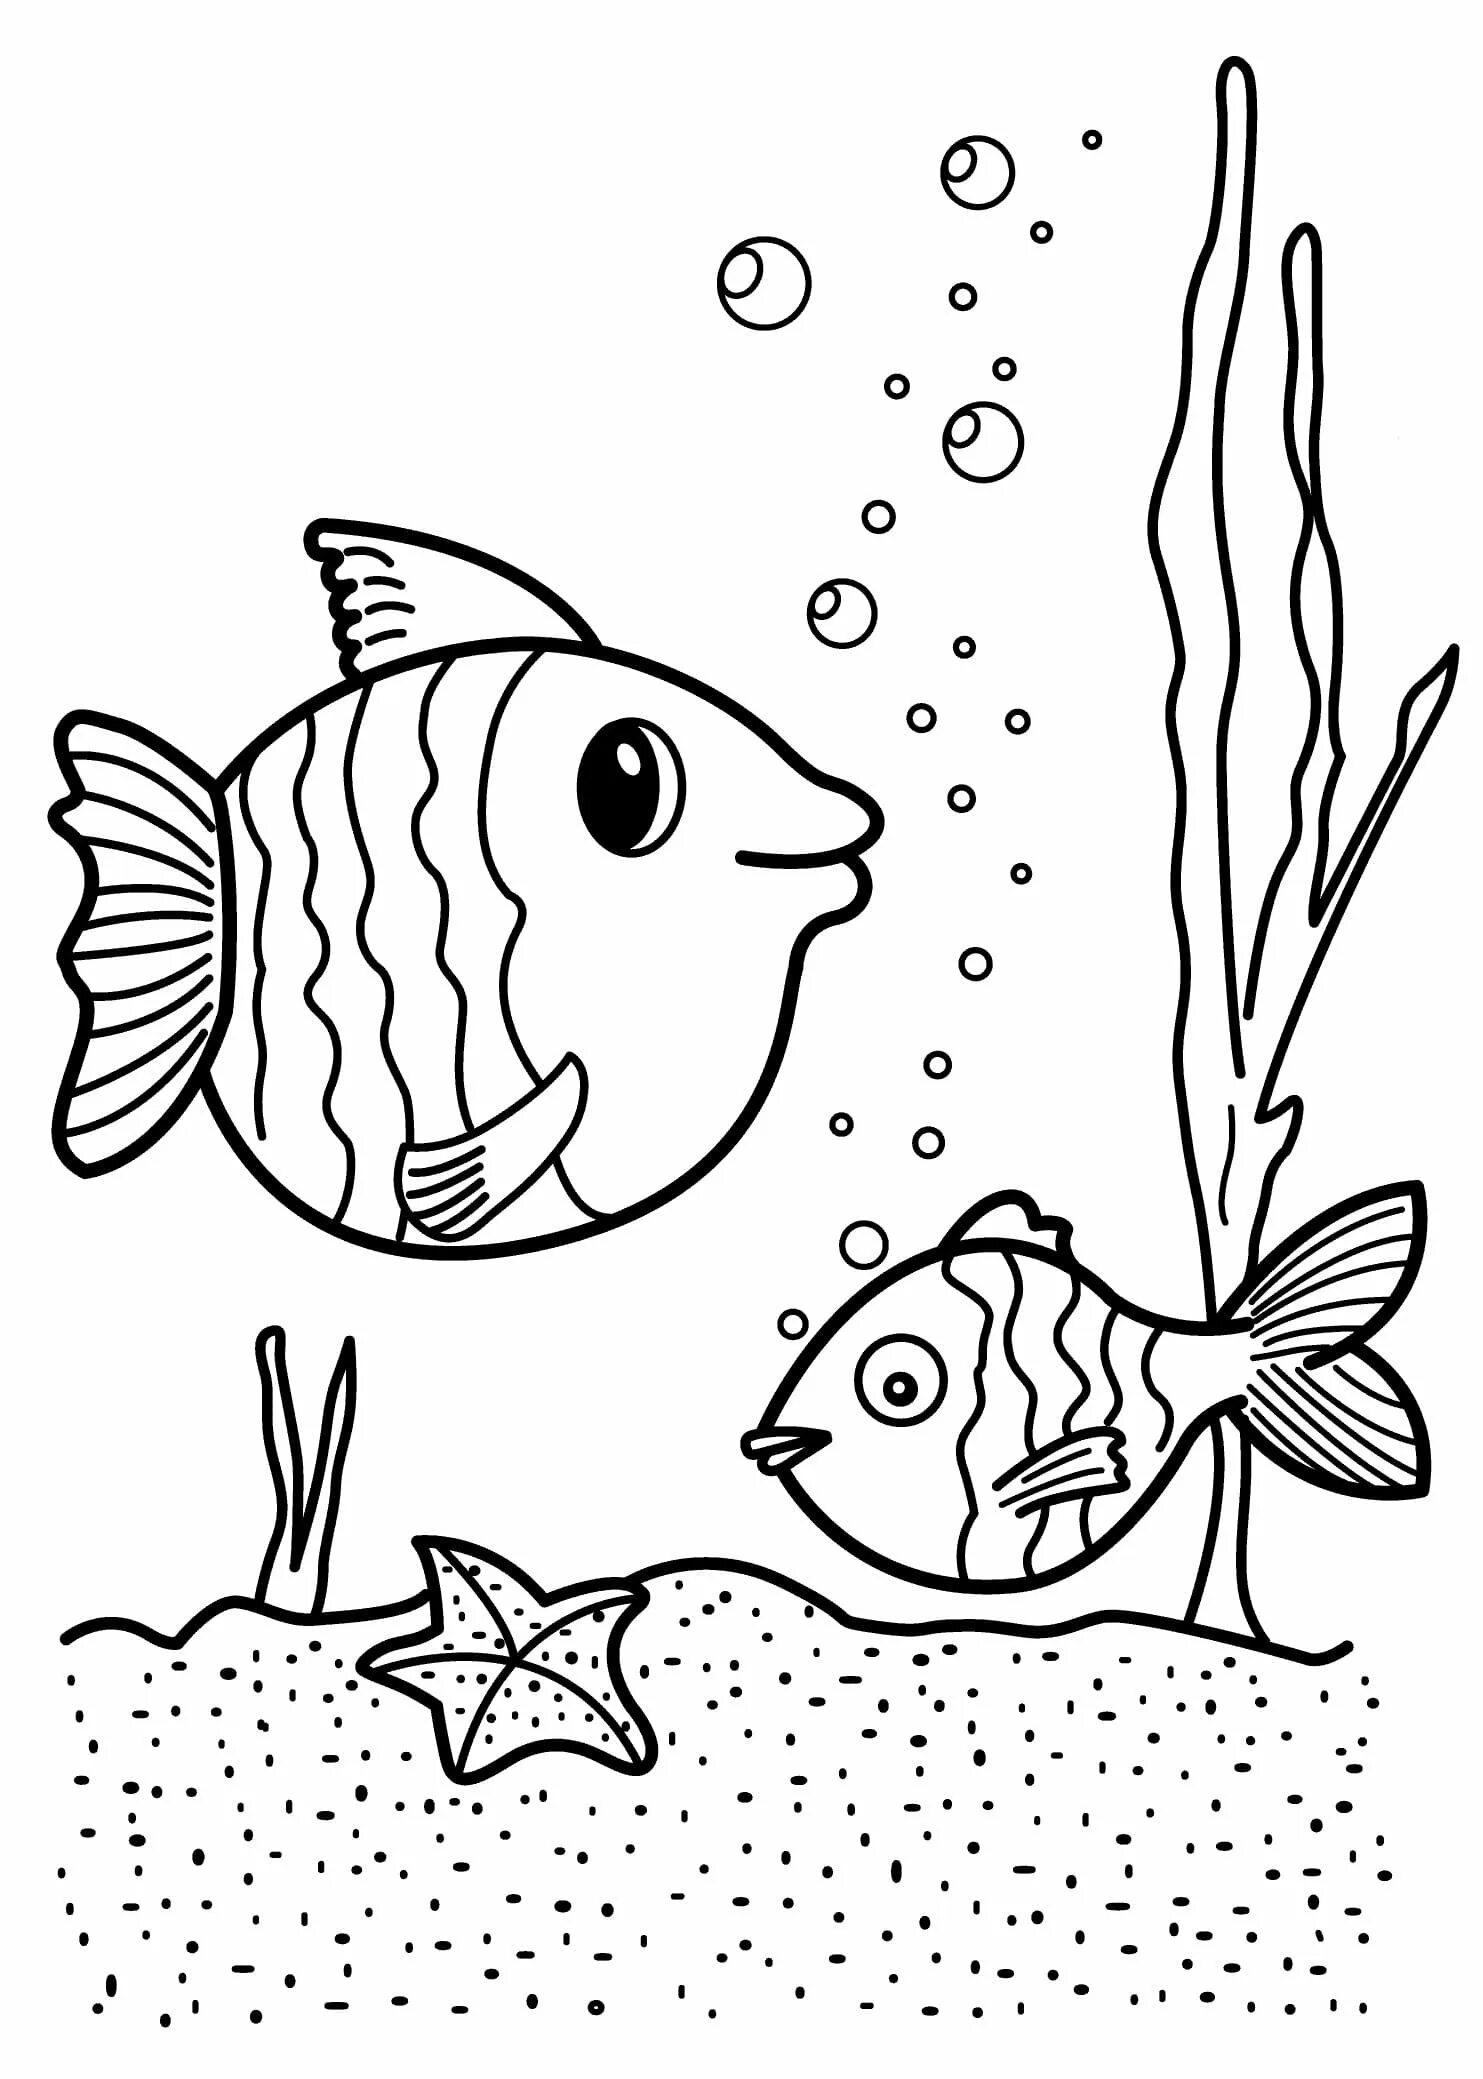 Раскраска рыбы для детей 7 лет. Раскраска рыбка. Рыбка раскраска для детей. Рыба раскраска для детей. Рыбка для раскрашивания для детей.